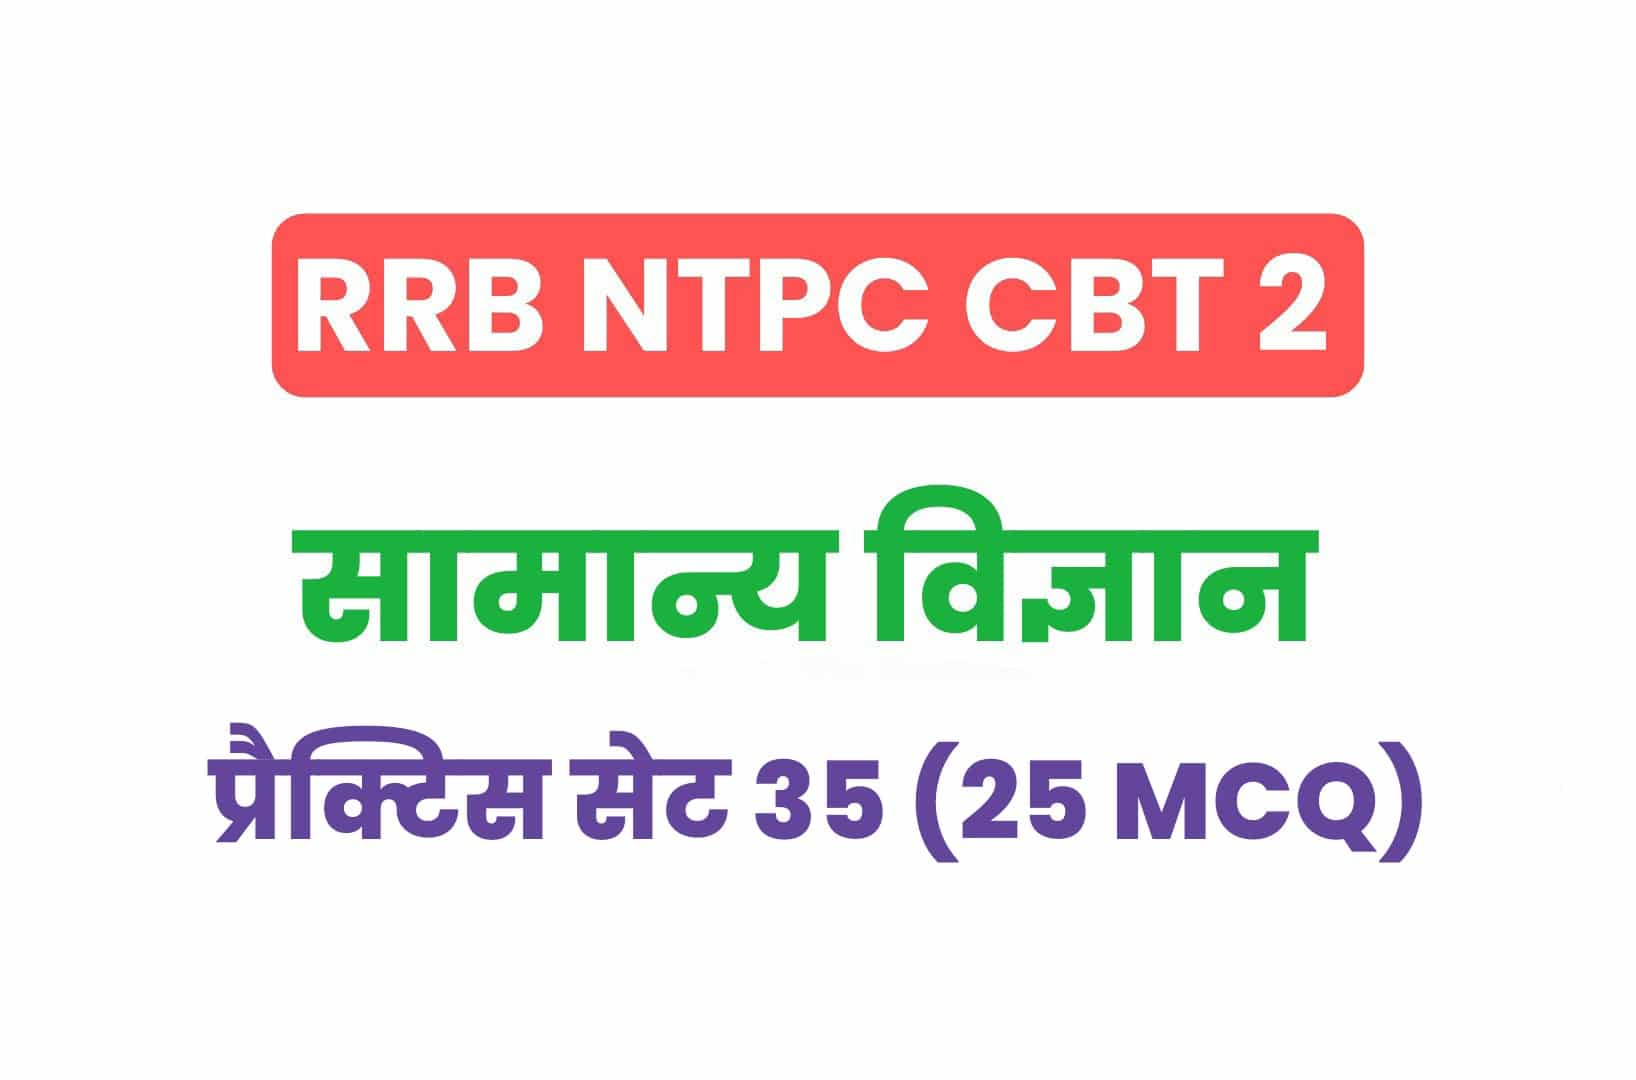 RRB NTPC CBT 2 Science प्रैक्टिस सेट 35: सामान्य विज्ञान के महत्वपूर्ण प्रश्नों का करें अध्ययन